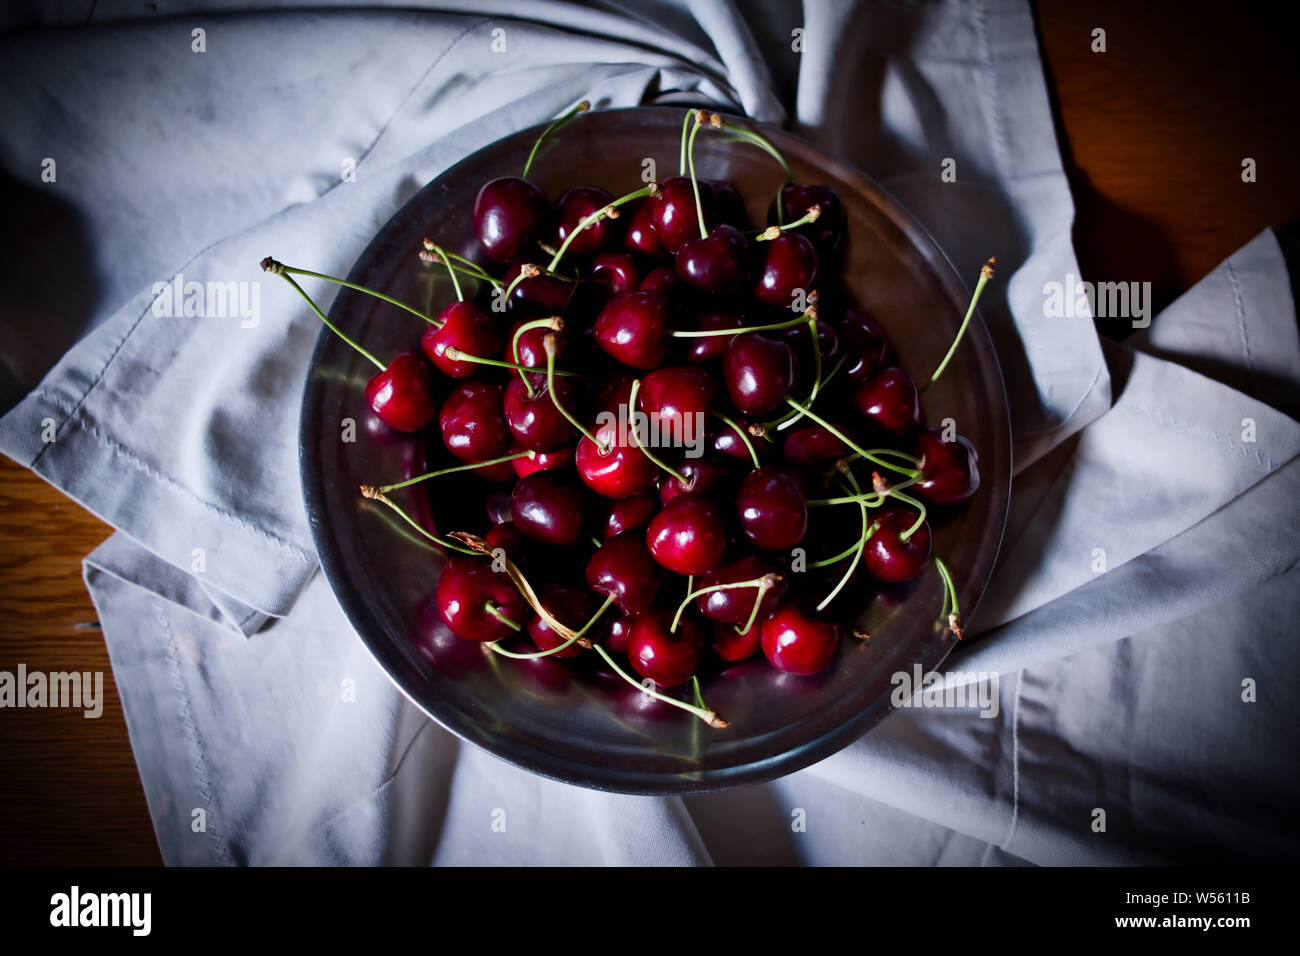 Kirsche, rote reife Kirschen in Platte und auf Stoff, Low Key oder dunkle Fotografie Stockfoto